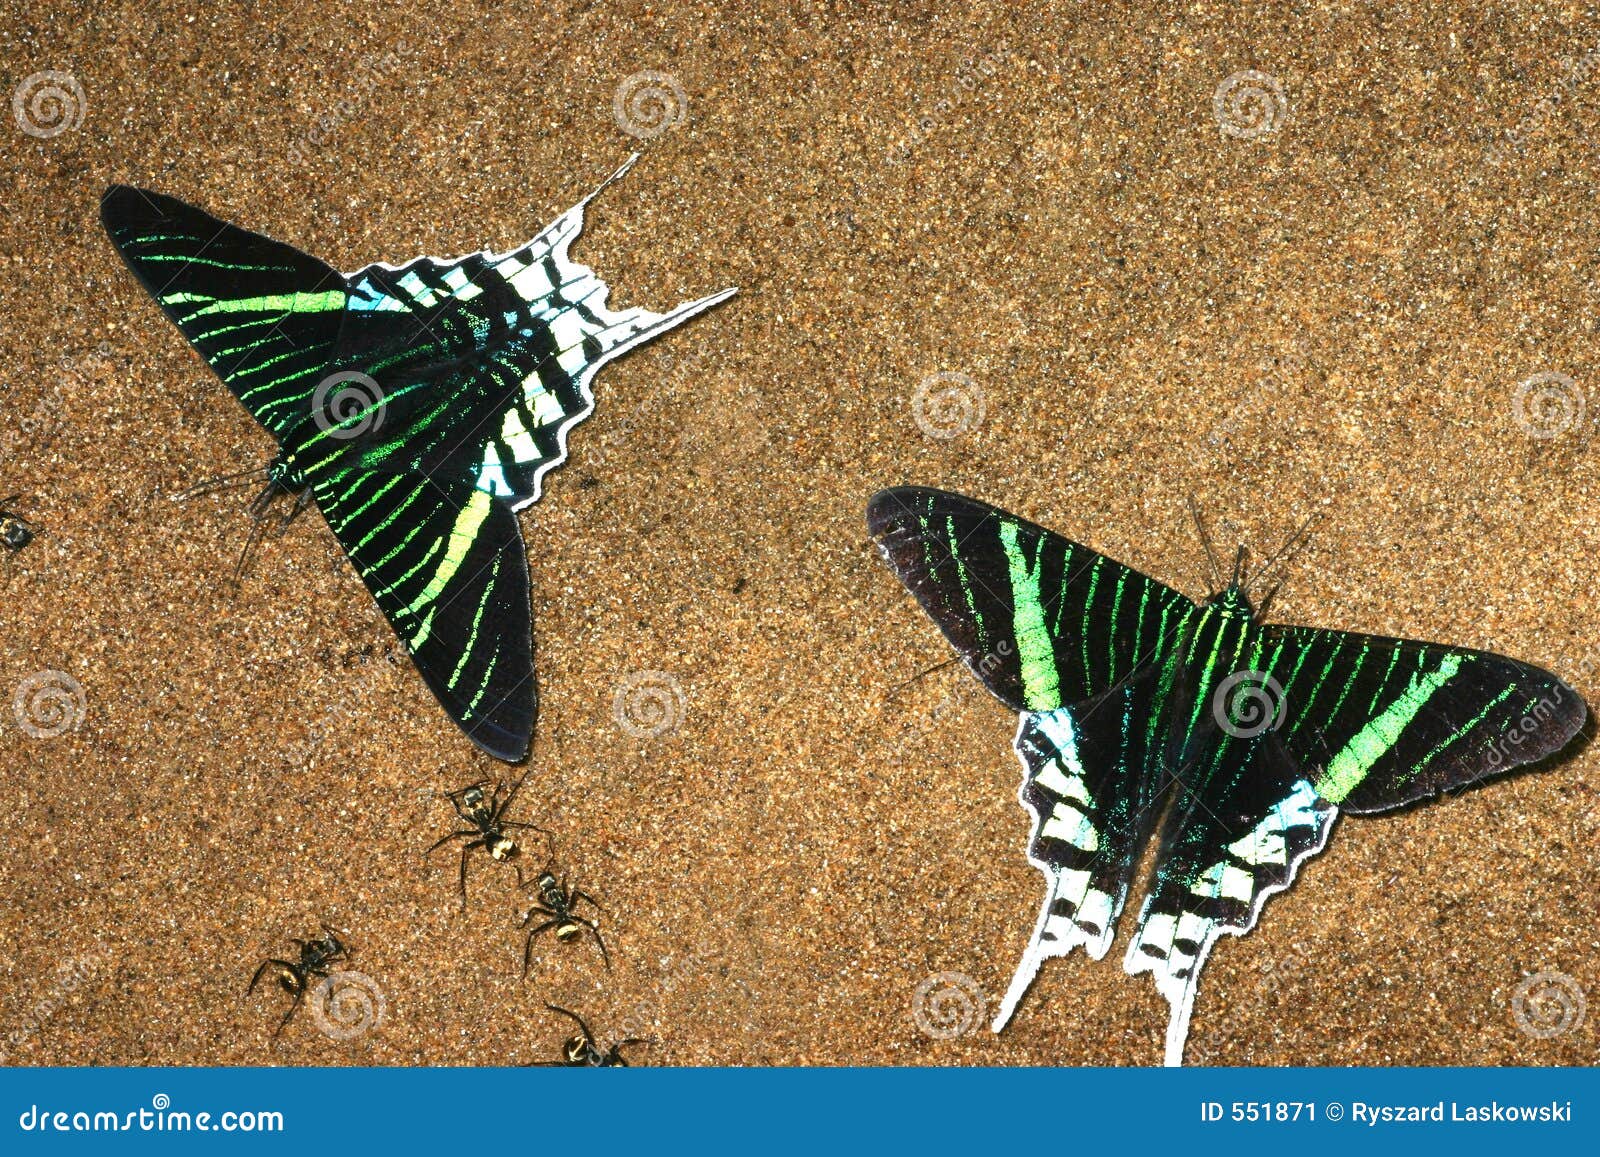 urania butterflies